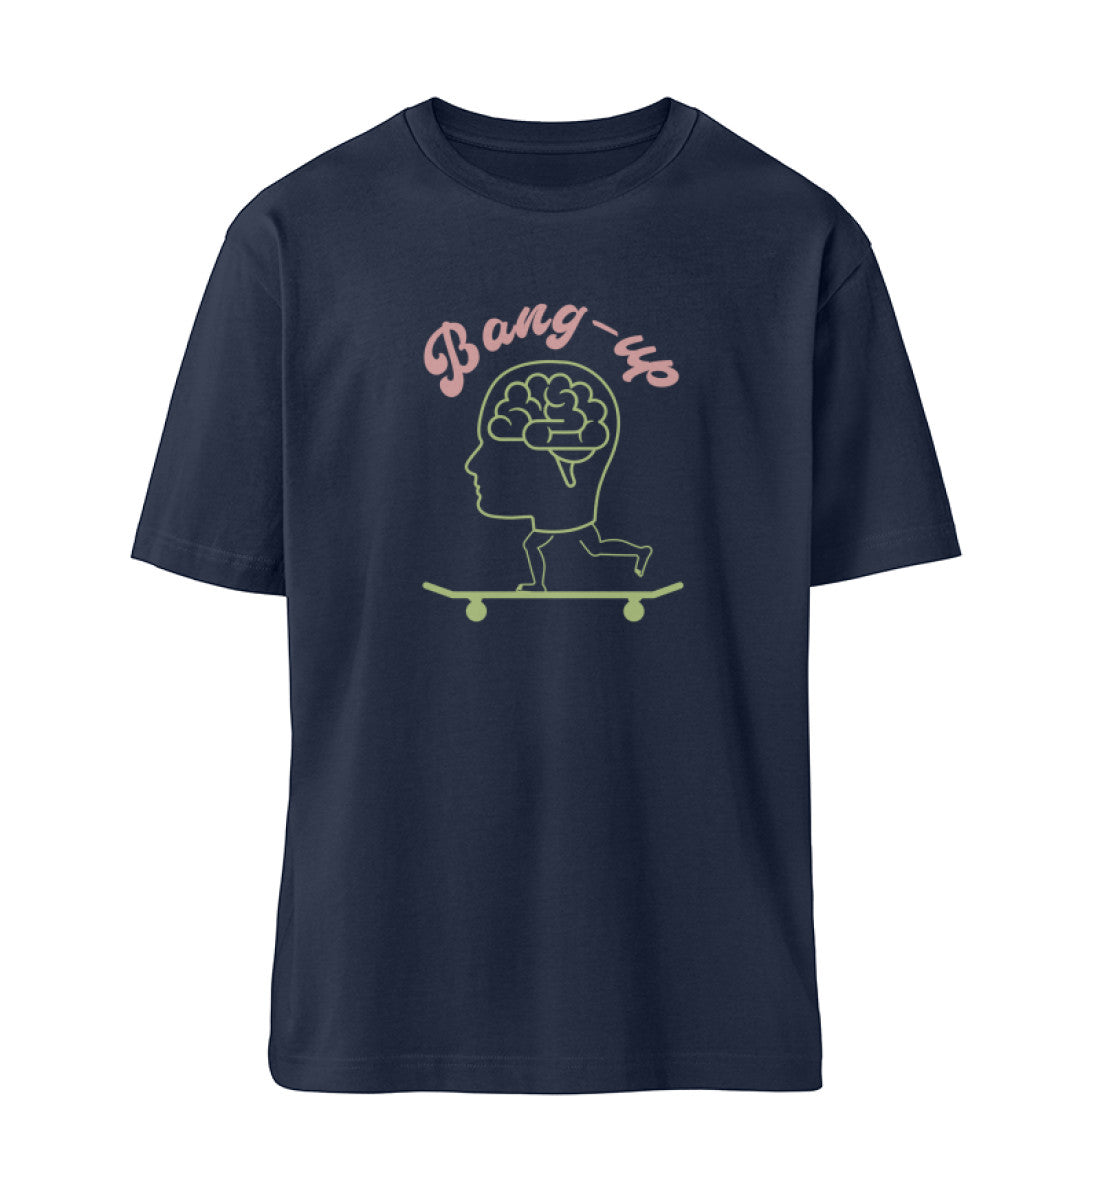 French Navy Blue T-Shirt Unisex für Damen und Herren im Relaxed Fit rückseitig bedruckt in schwarz mit Design der Skateboard Bang Up Brain Kollektion und dem Logo Schriftzug von Roger Rockawoo Clothing